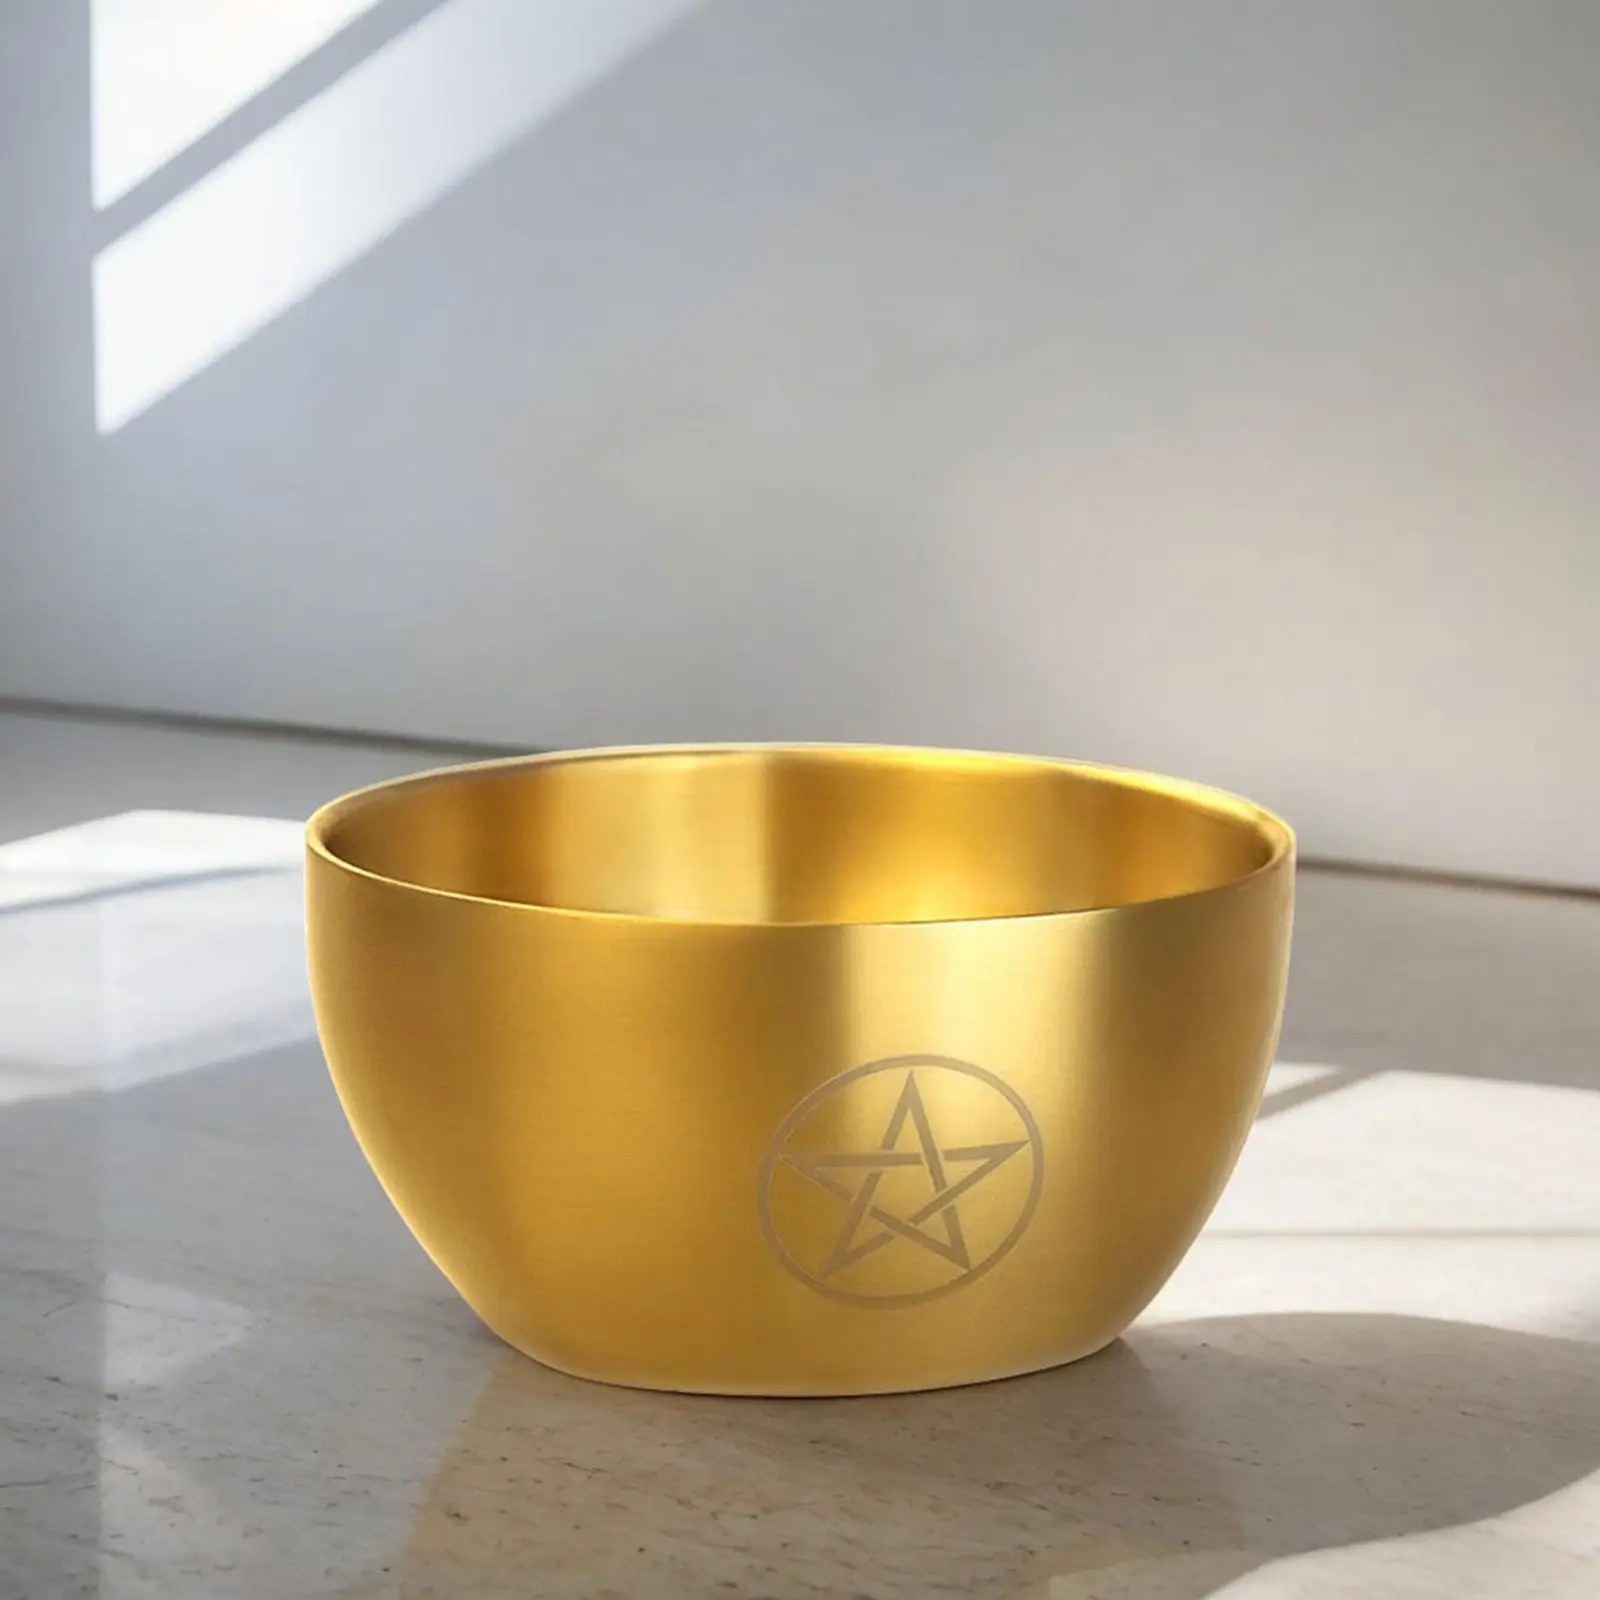 Yoga Meditation Bowl Hand Carved Home Decoration Smudging Bowl Decorative Metal Bowl Altar Burner Holder Pentagram Offering Bowl